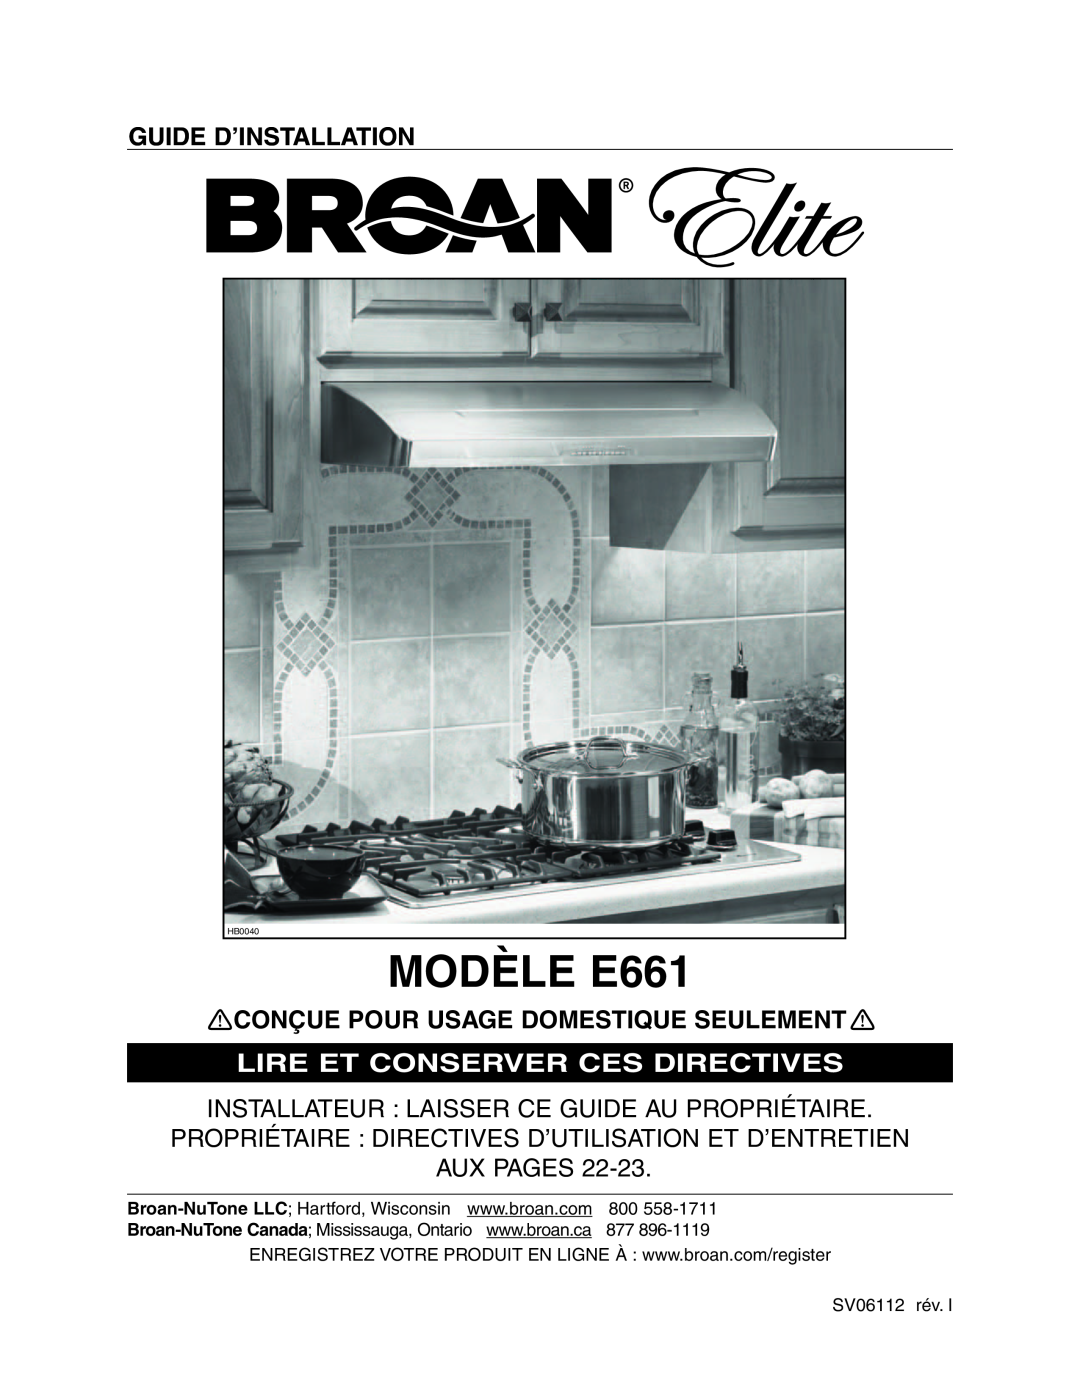 Broan E66130BL MODÈLE E661, Guide D’Installation, Lire Et Conserver Ces Directives, Conçue Pour Usage Domestique Seulement 